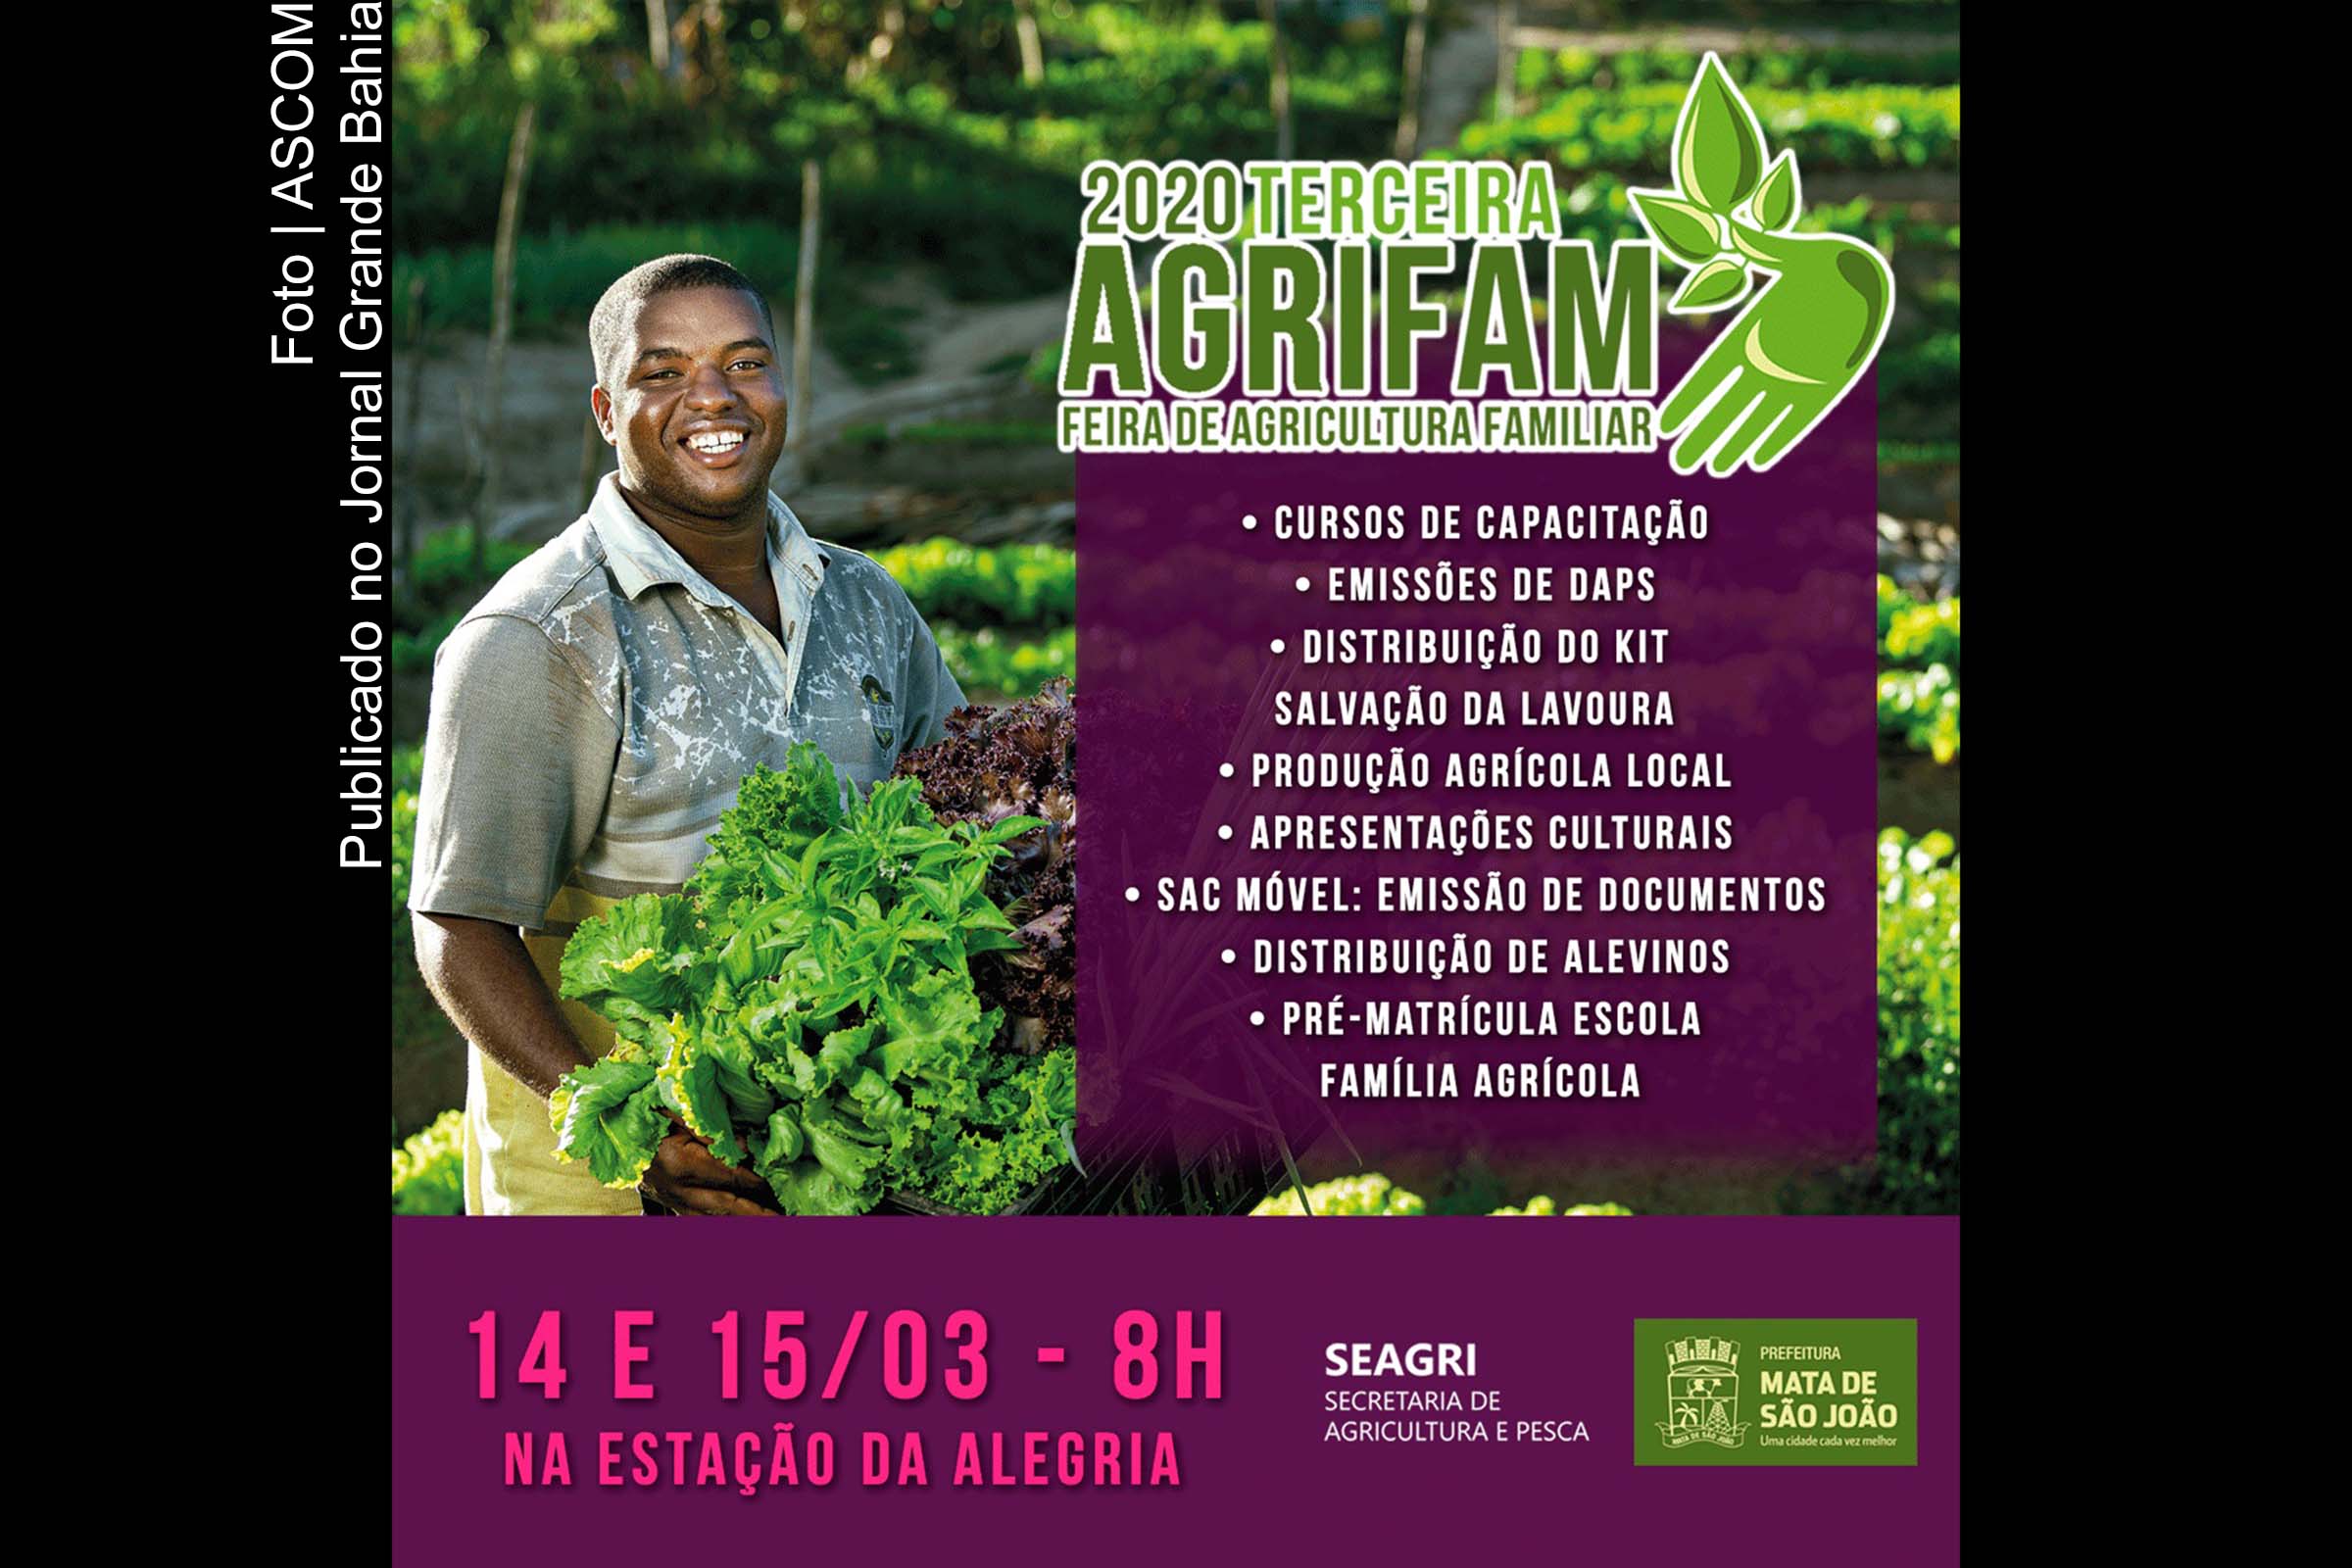 Cartaz anuncia Feira de agricultura familiar 2020.